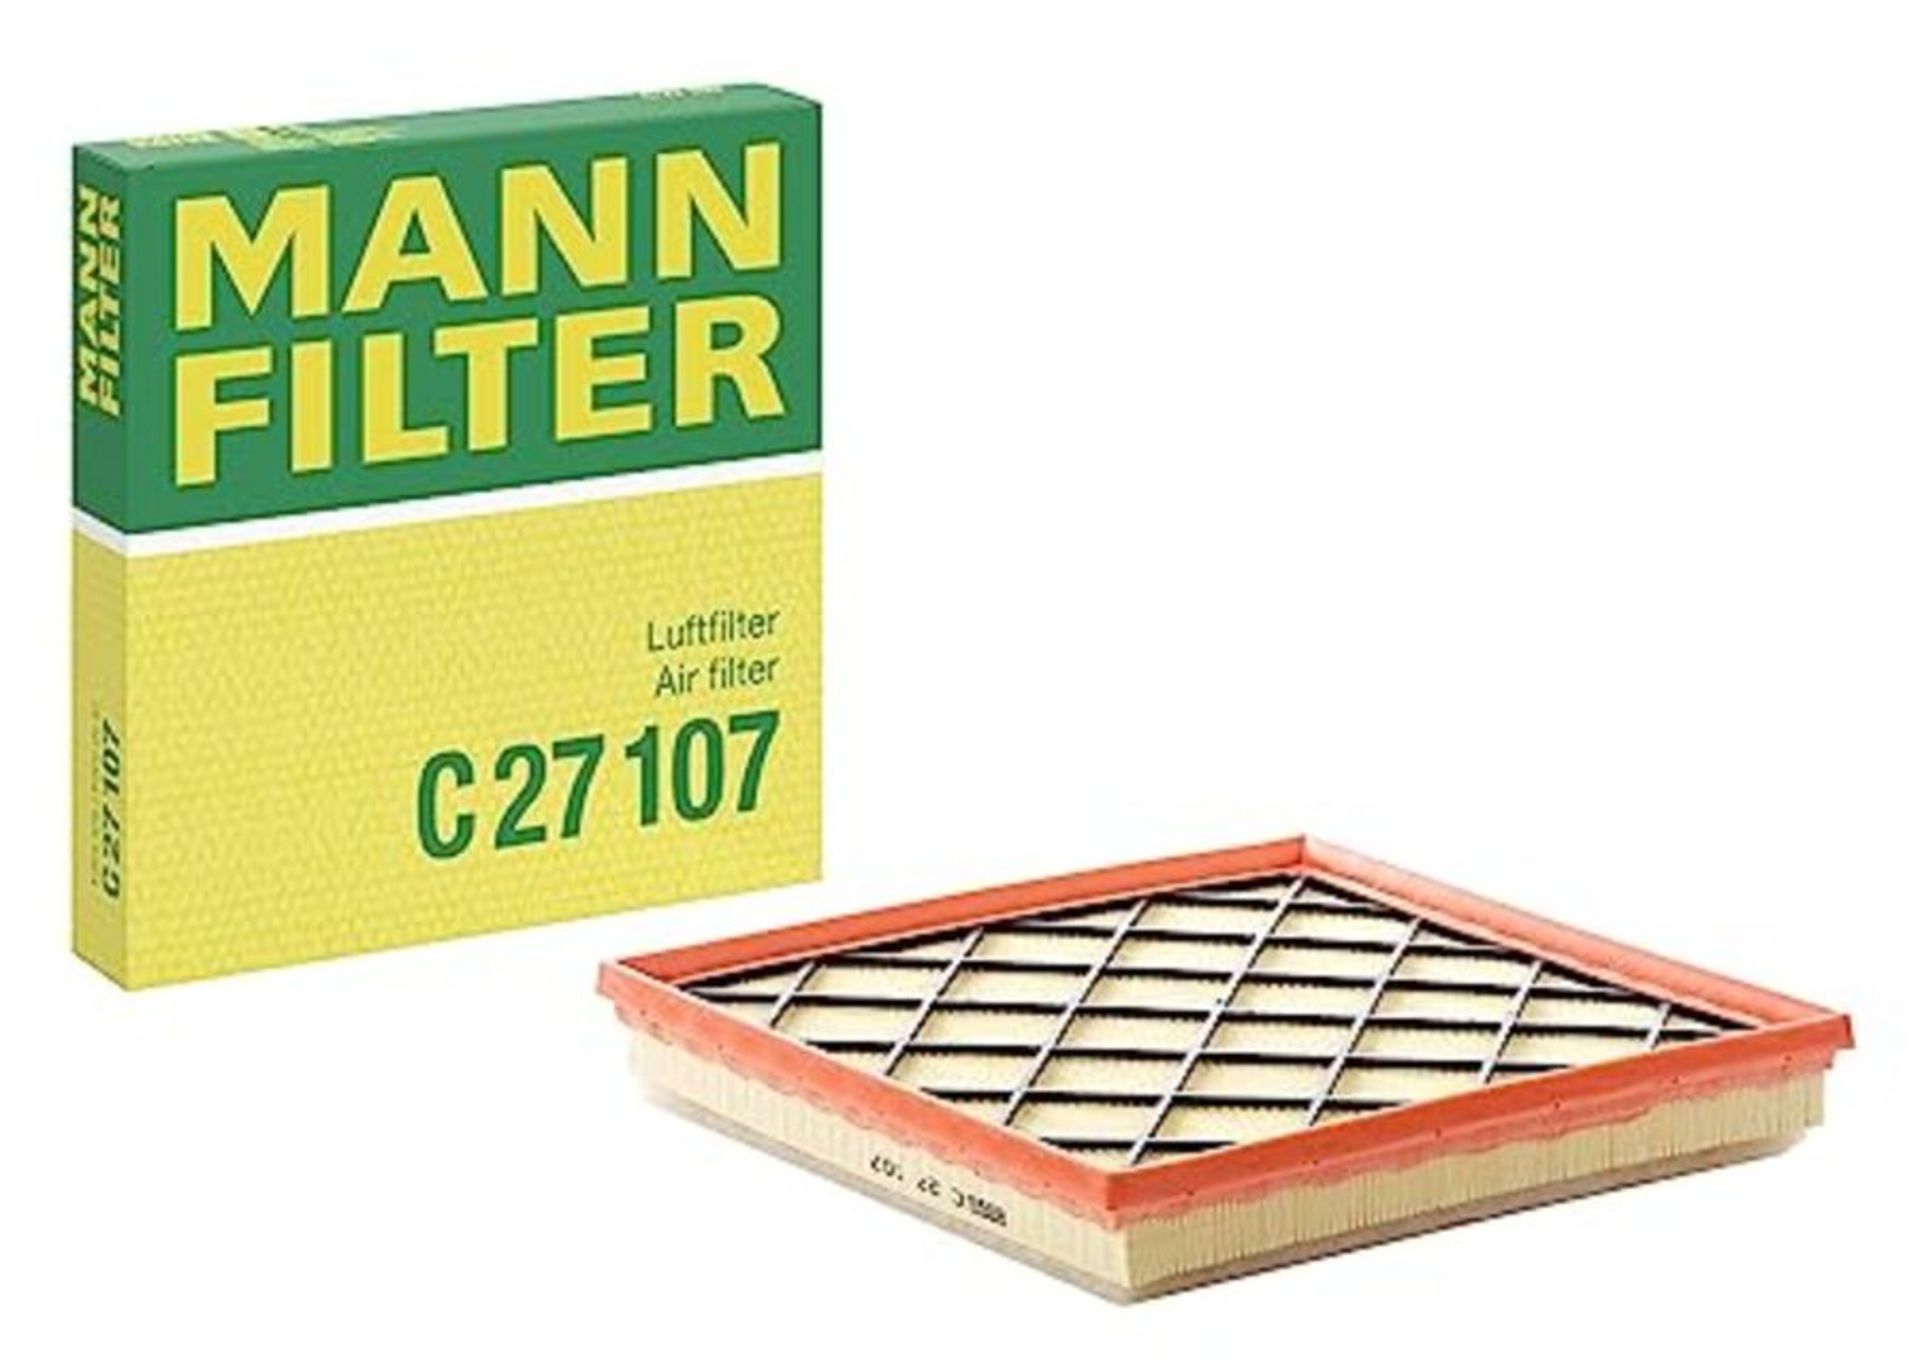 MANN-FILTER C 27 107 Air Filter  For Passenger Cars